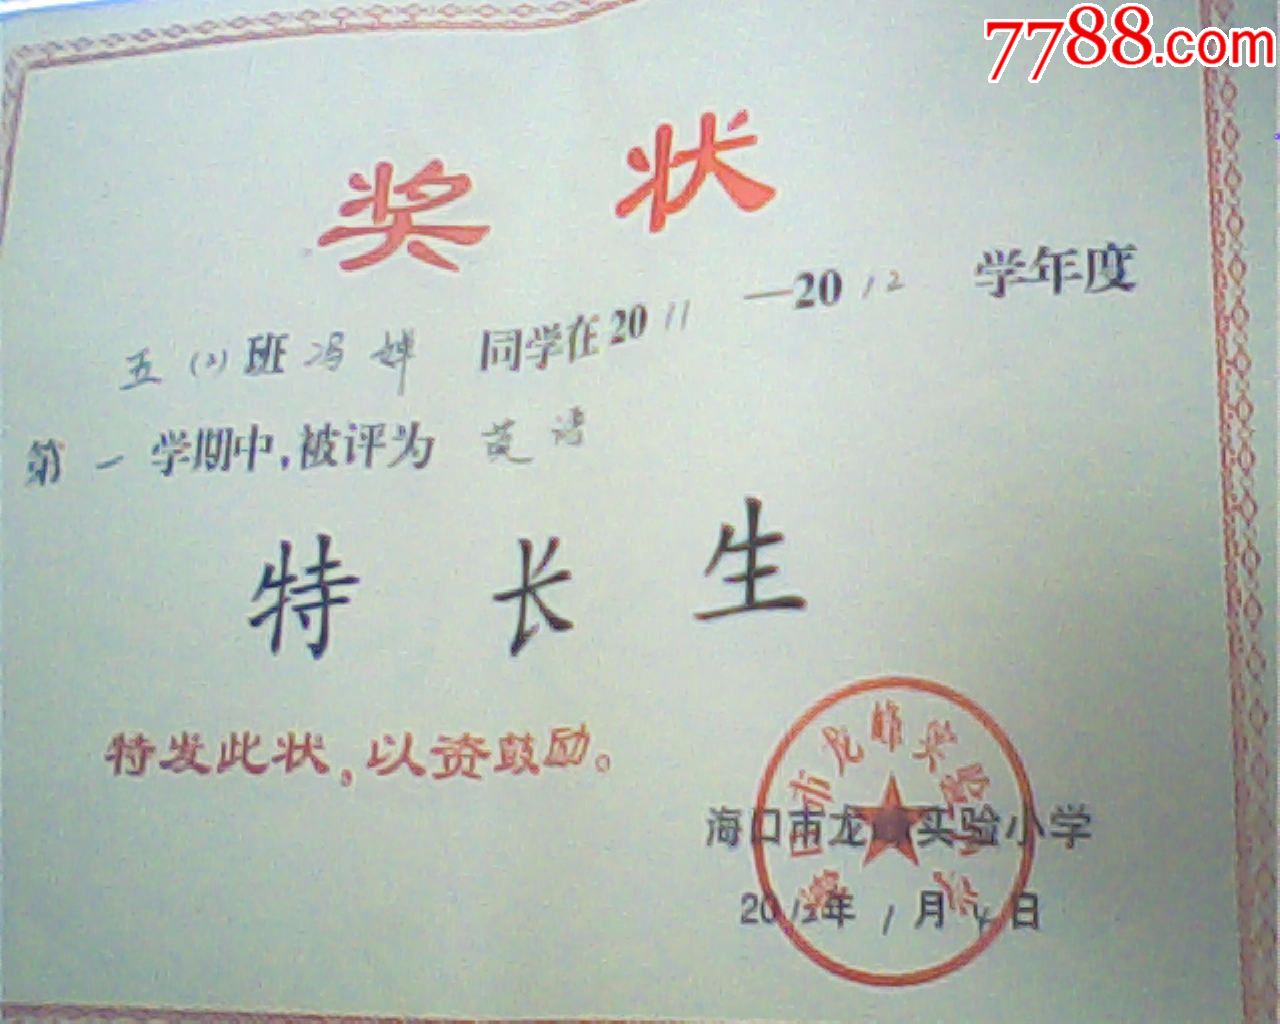 旧奖状,2012年海口龙峰小学特长生奖,16开单页